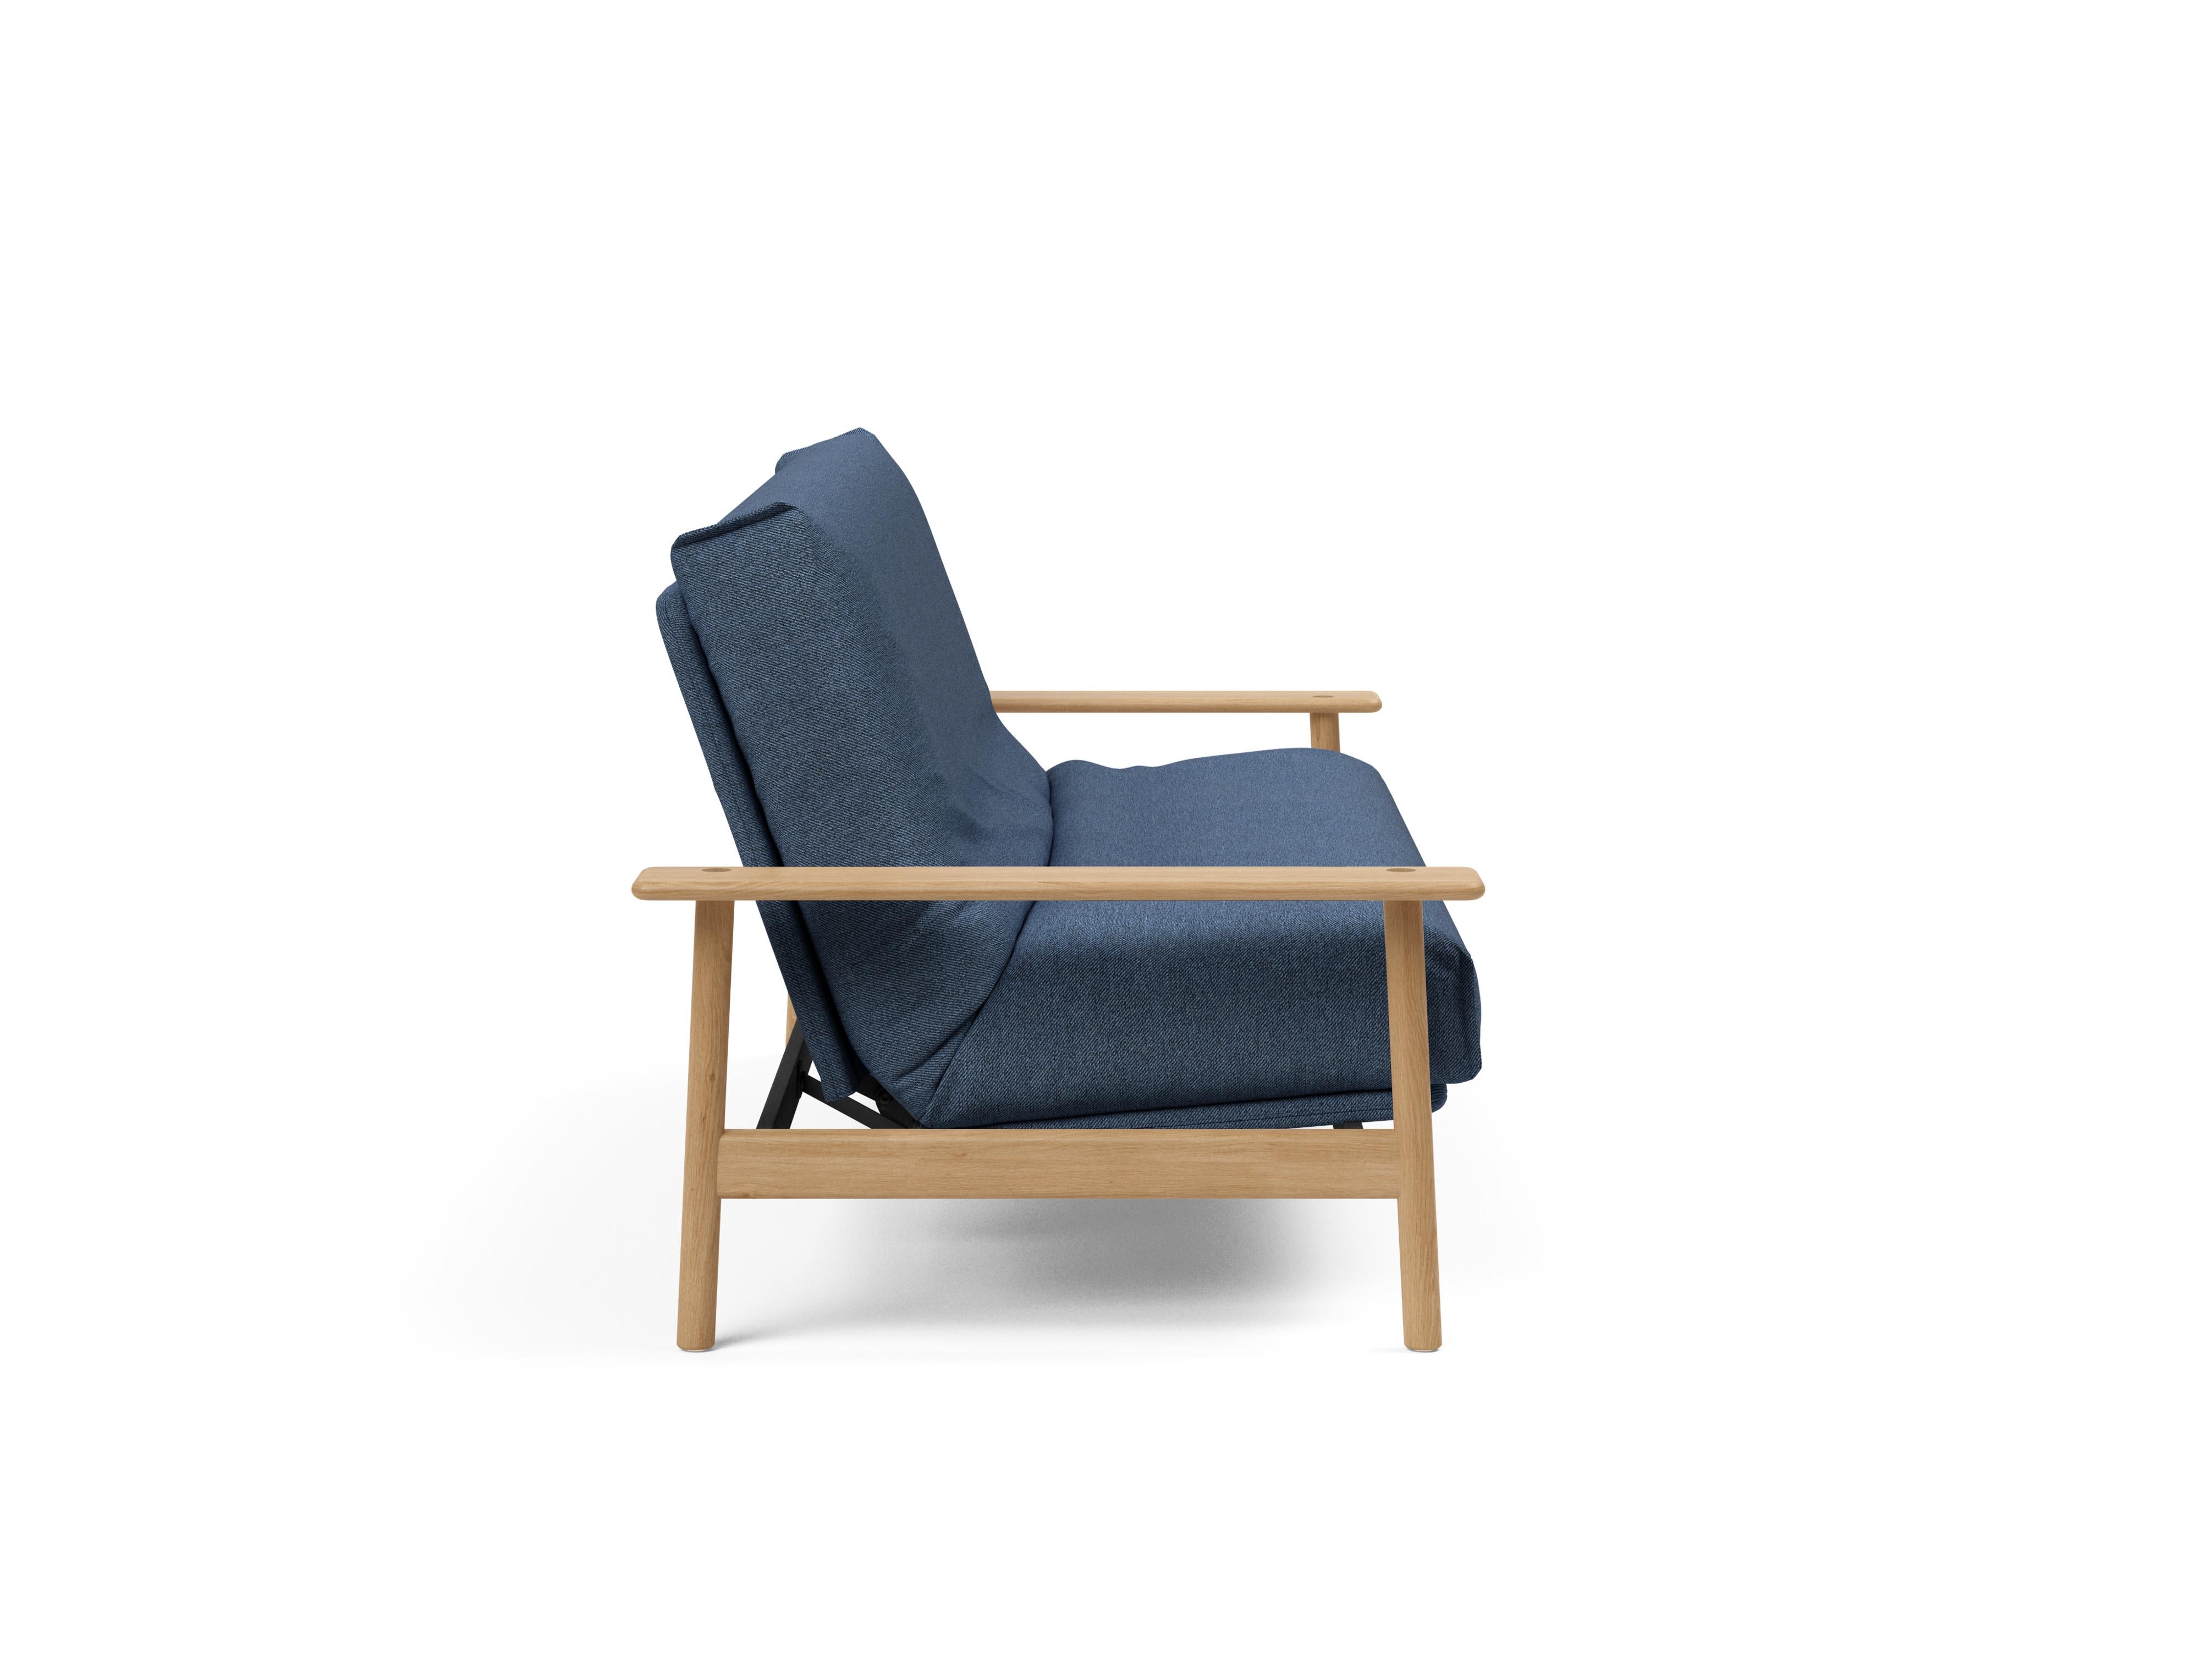 Balder Bettsofa Nordic in Blau 302 präsentiert im Onlineshop von KAQTU Design AG. Bettsofa ist von Innovation Living